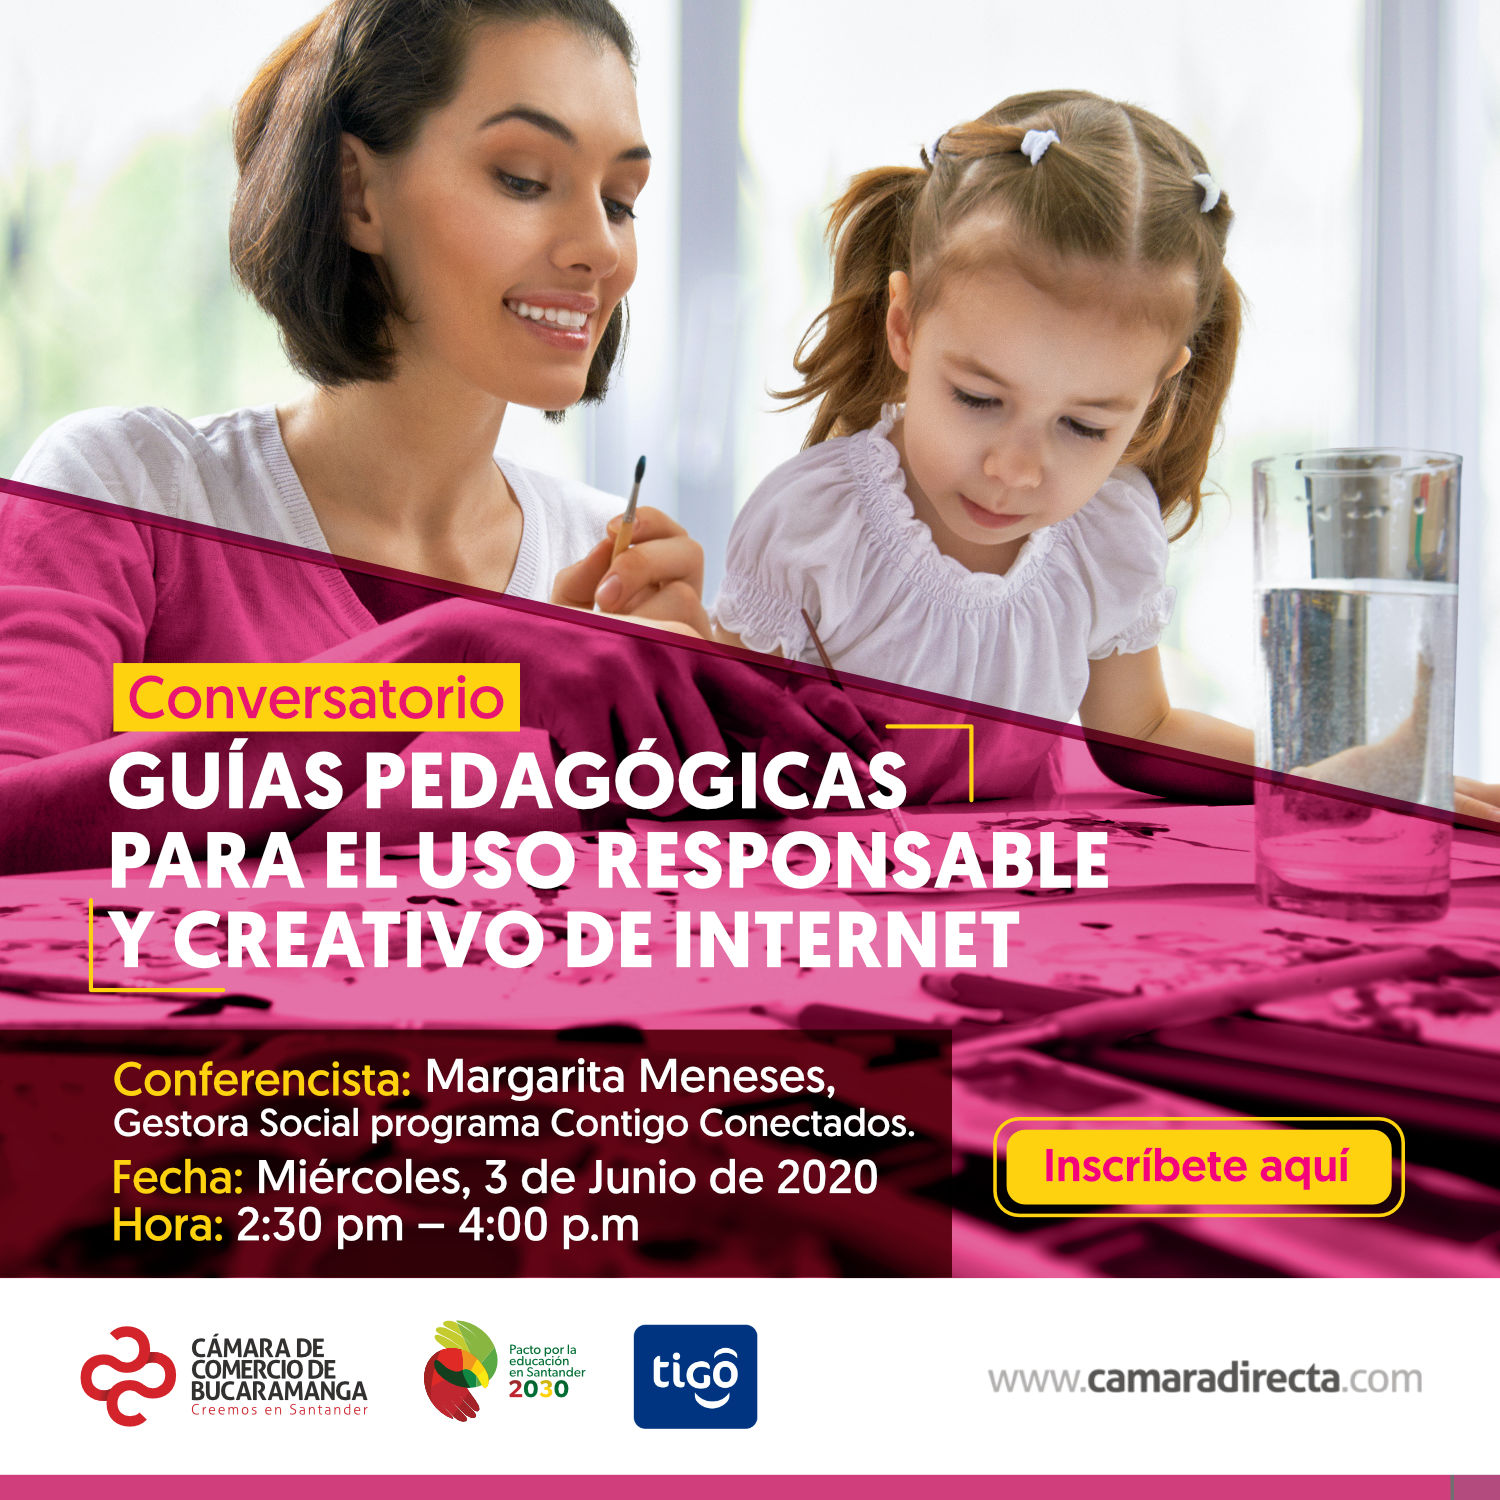 CONVERSATORIO VIRTUAL - GUÍAS PEDAGÓGICAS PARA EL USO RESPONSABLE Y CREATIVO DE INTERNET